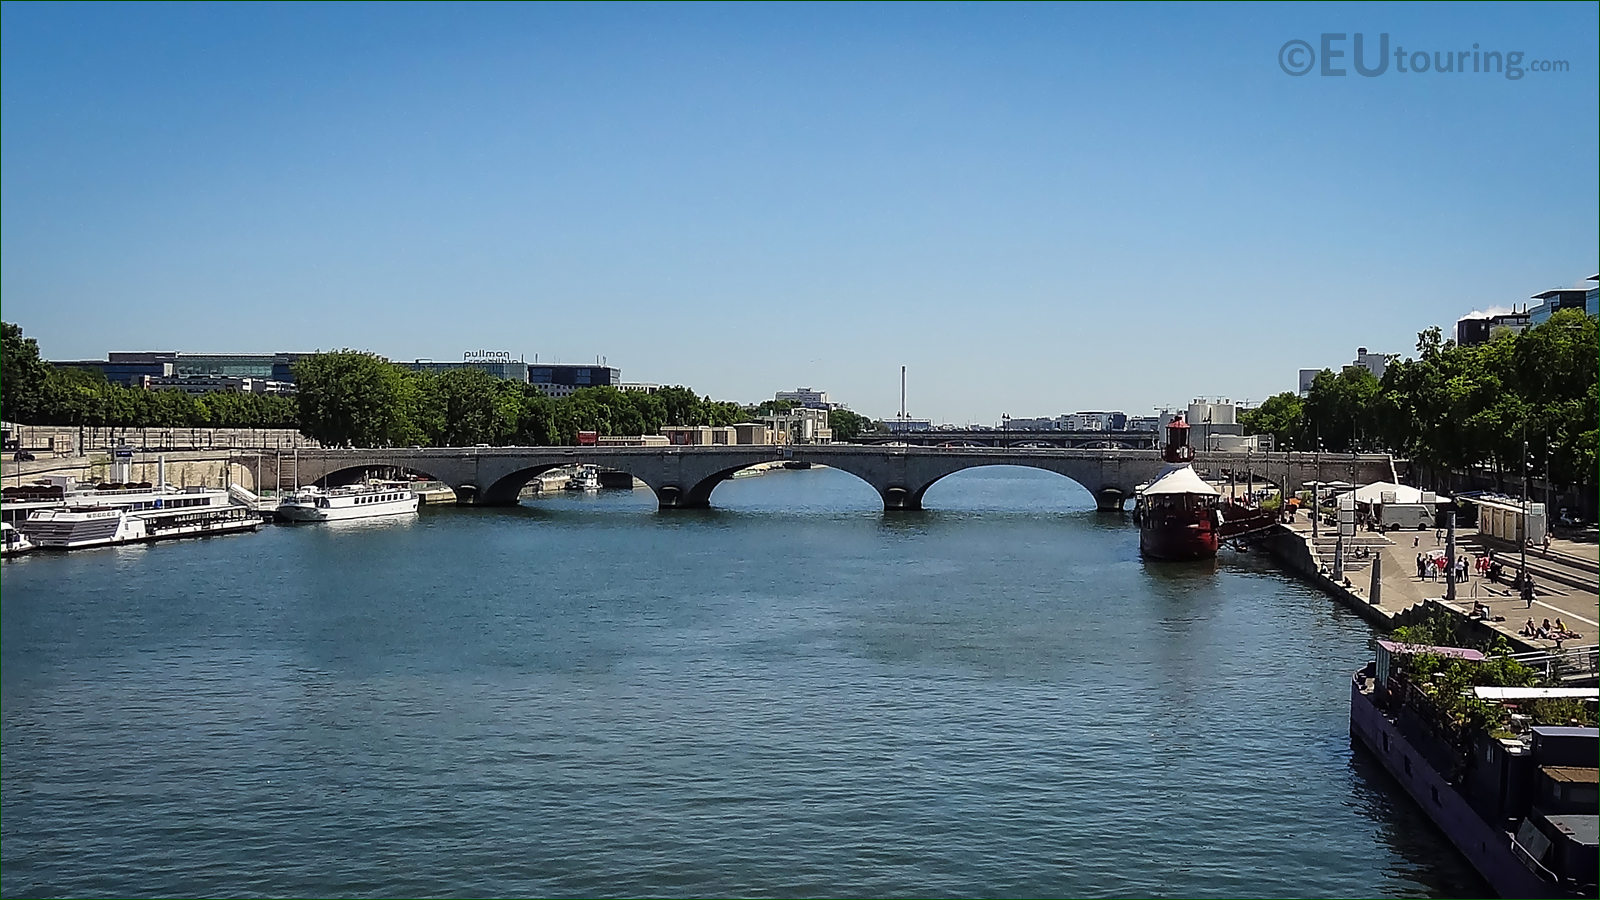 Hd Photographs Of Pont De Tolbiac In Paris France